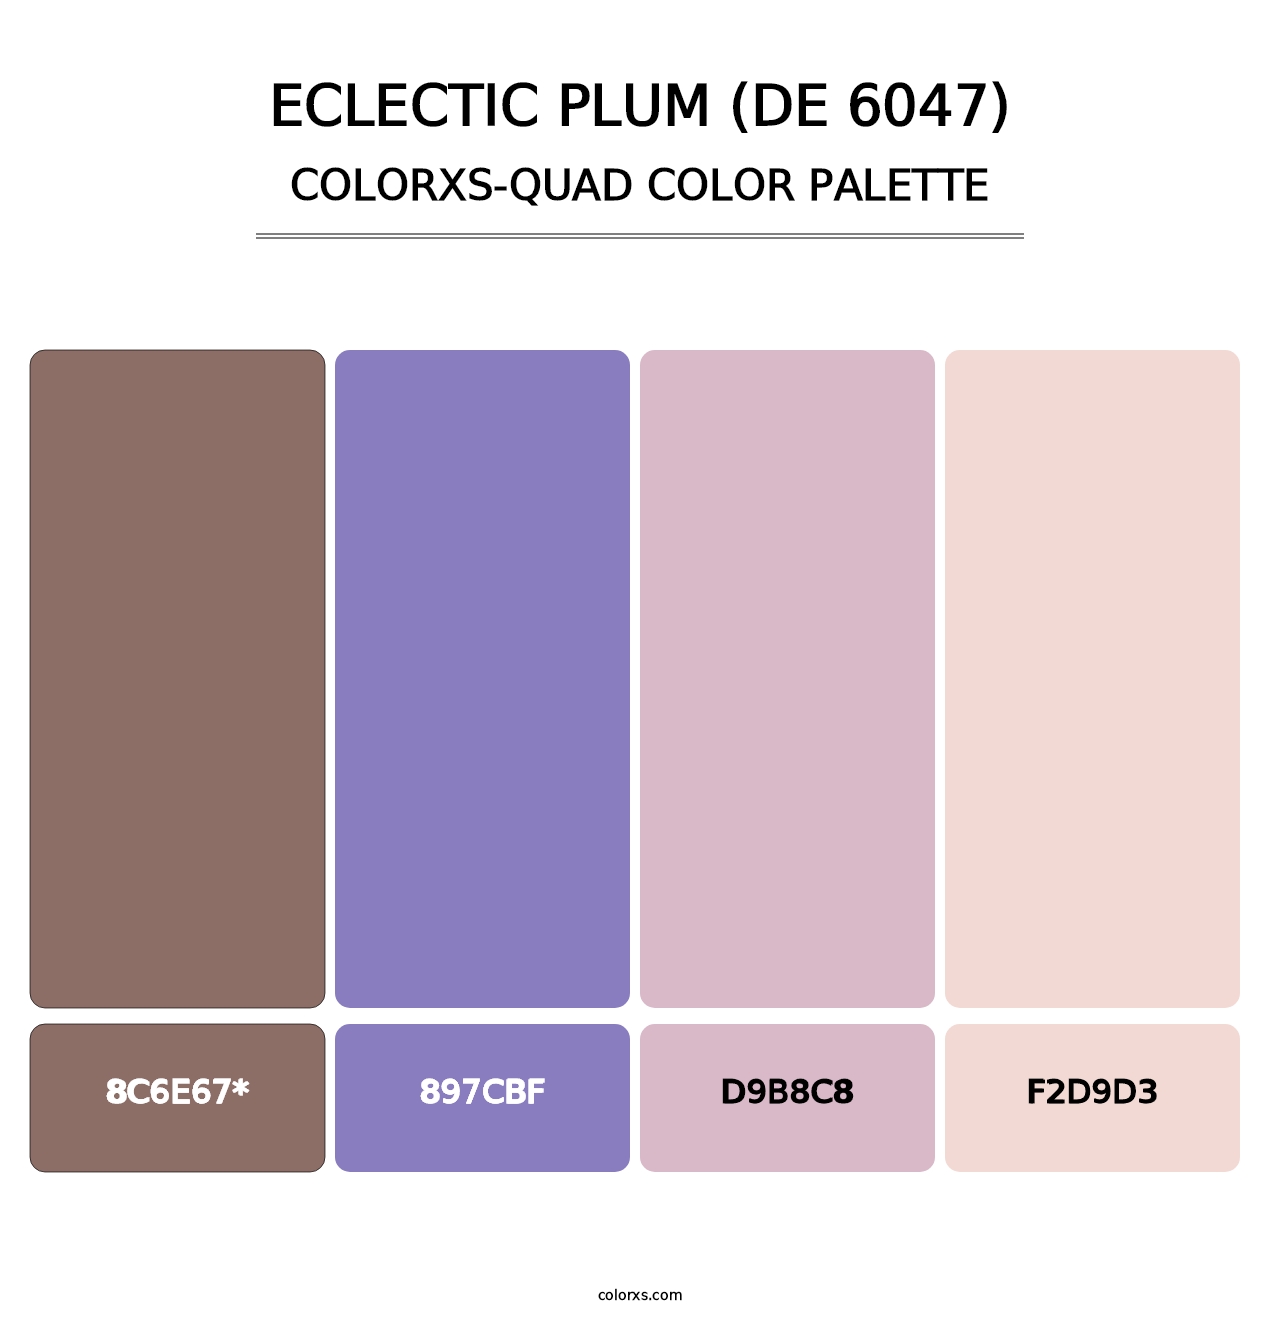 Eclectic Plum (DE 6047) - Colorxs Quad Palette